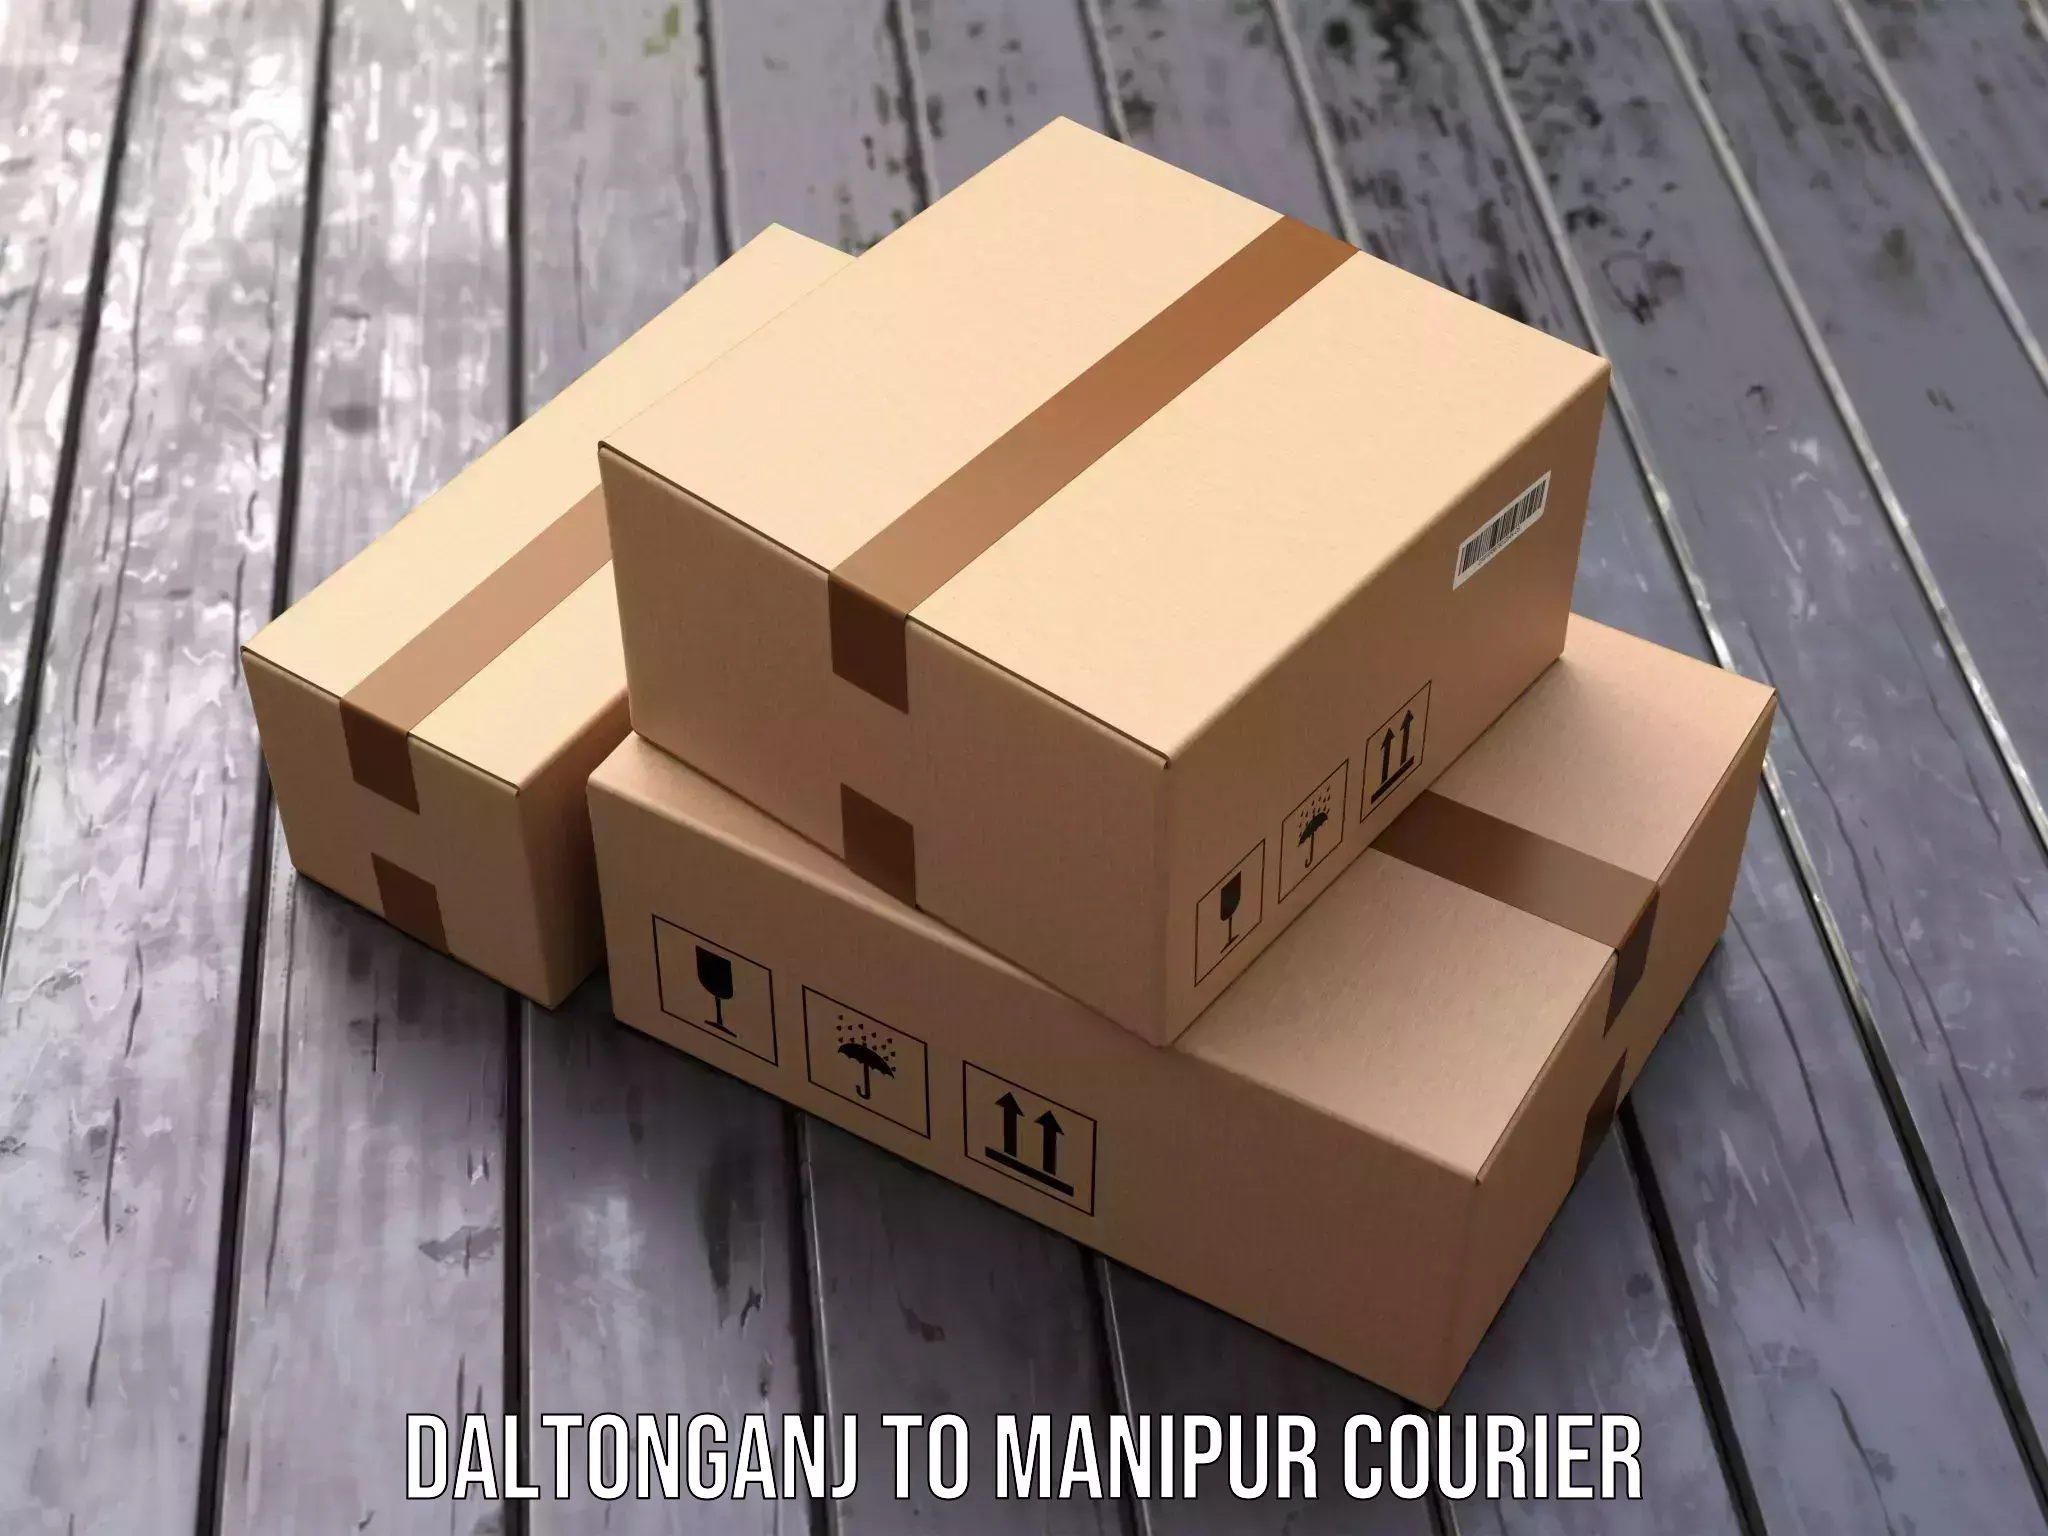 Next-generation courier services Daltonganj to Kaptipada